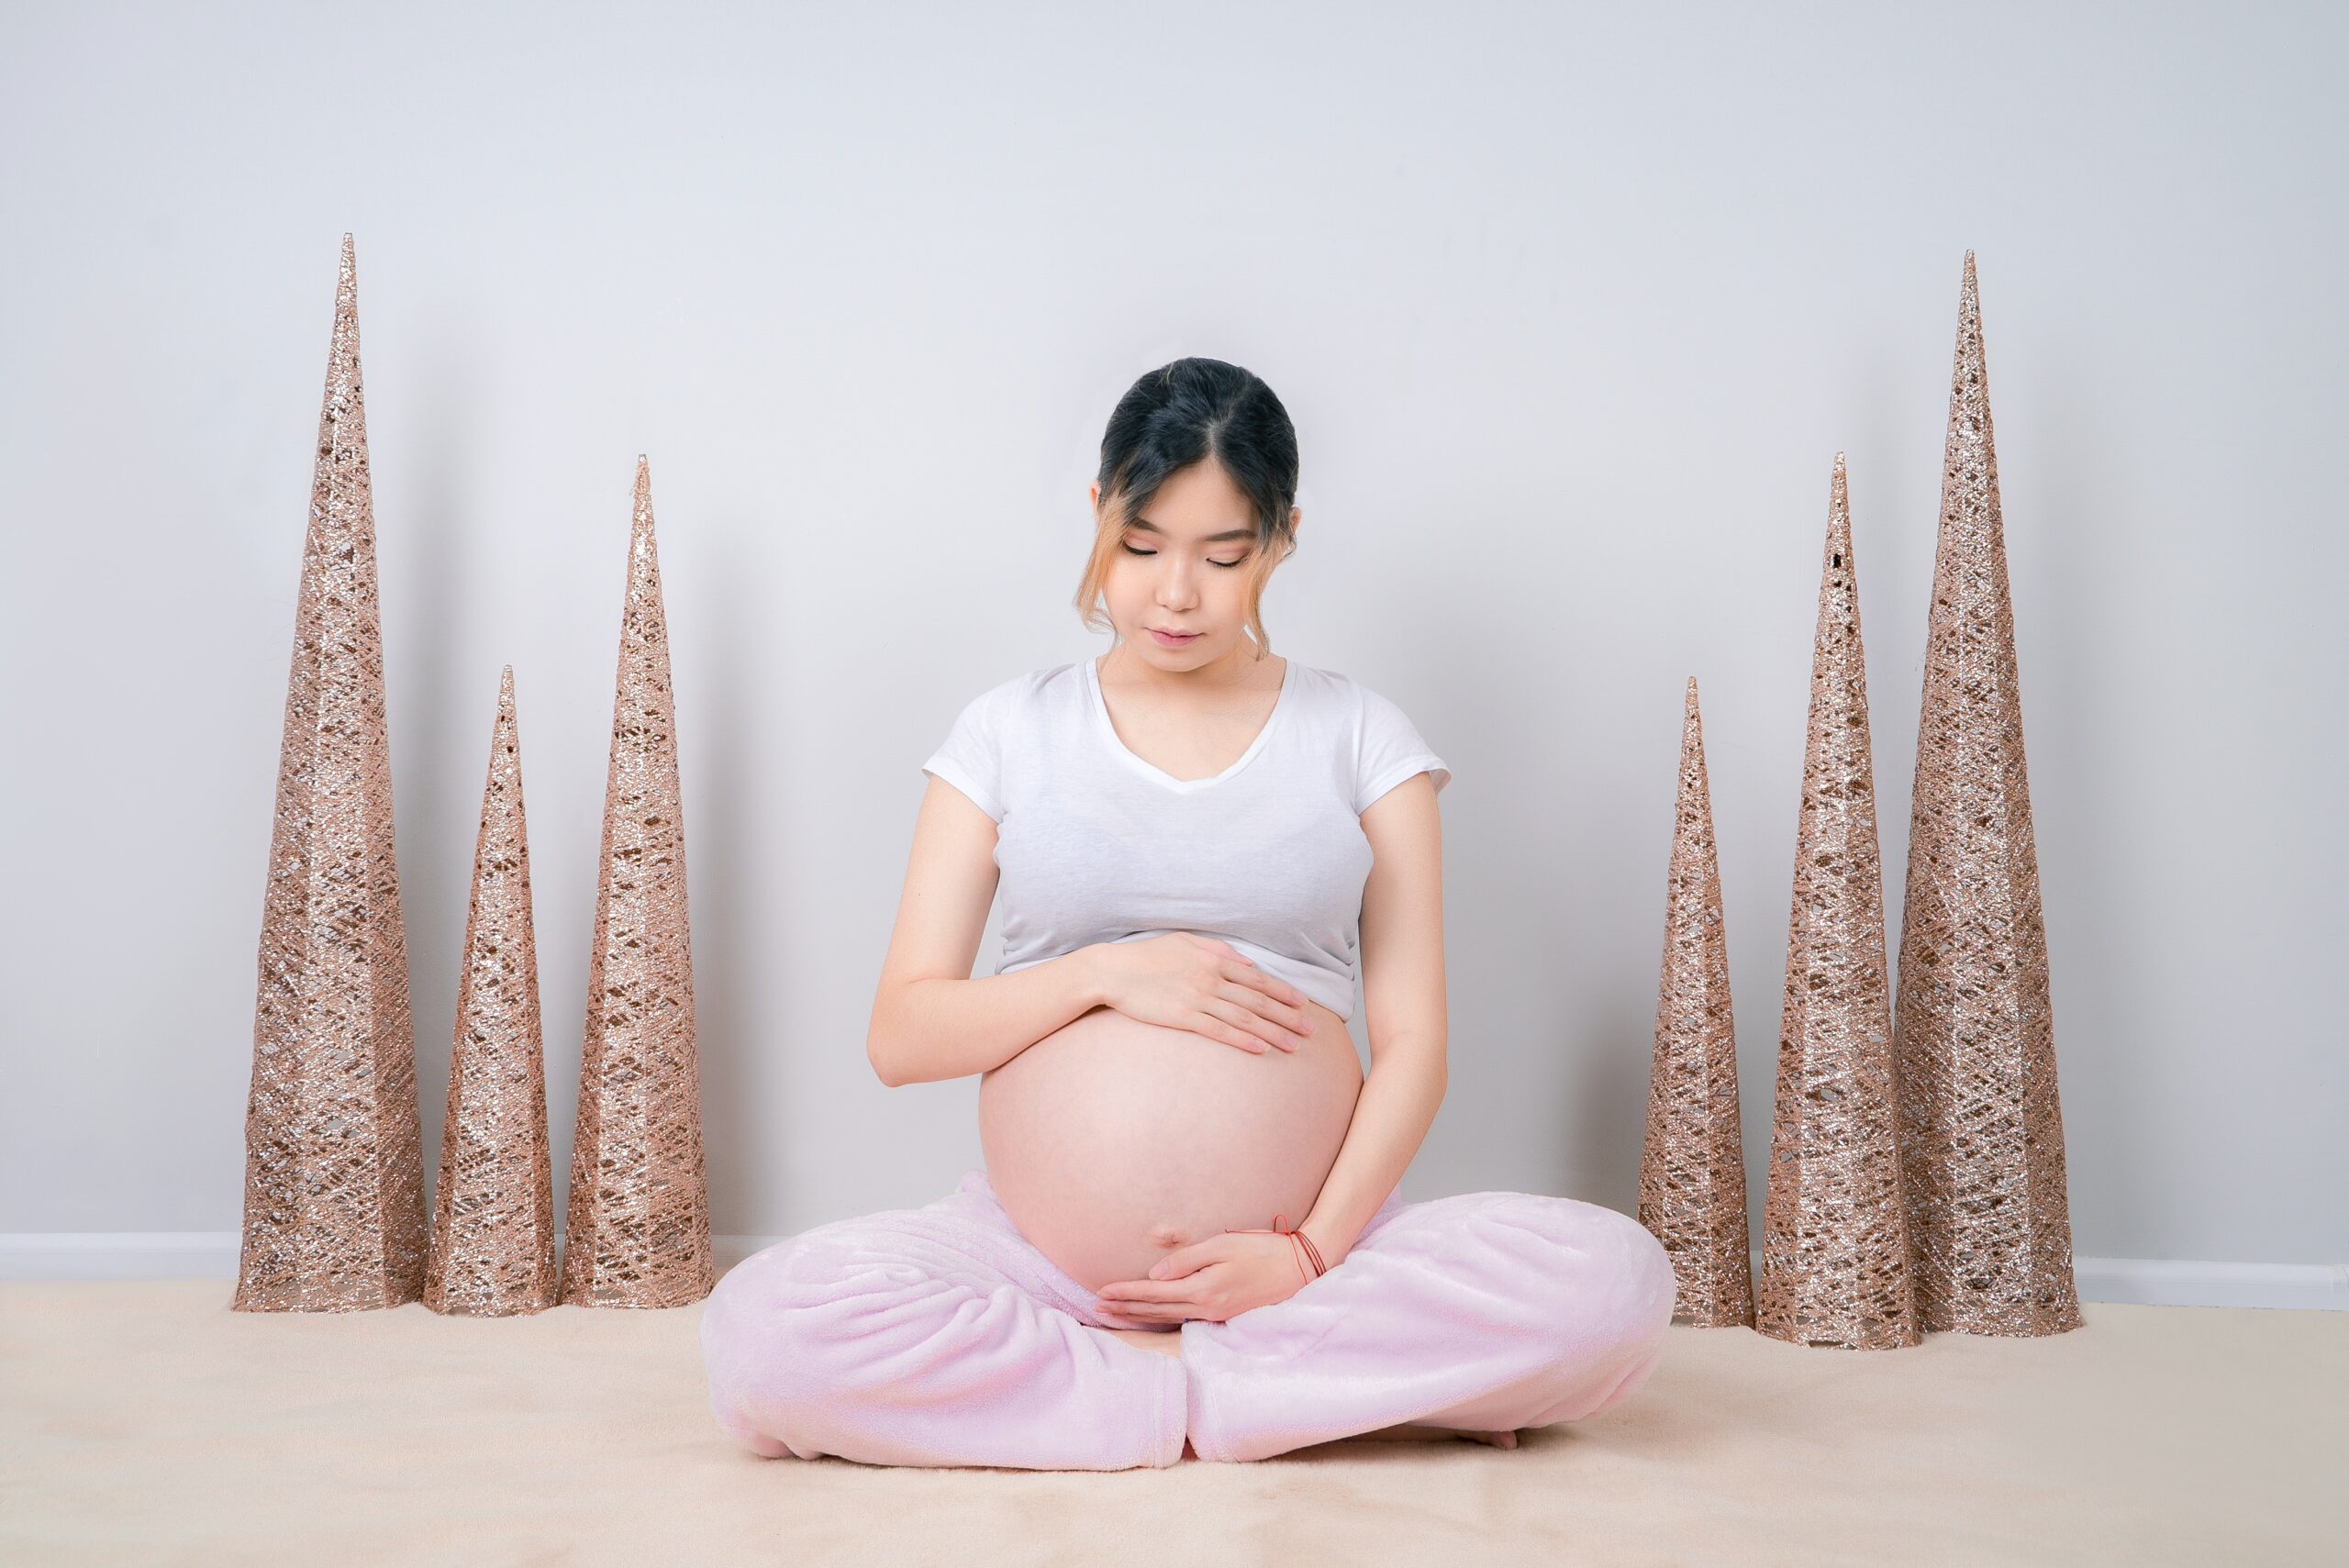 future maman - femme enceinte - massage - futur bébé - grossesse - massothérapie - bien être maman